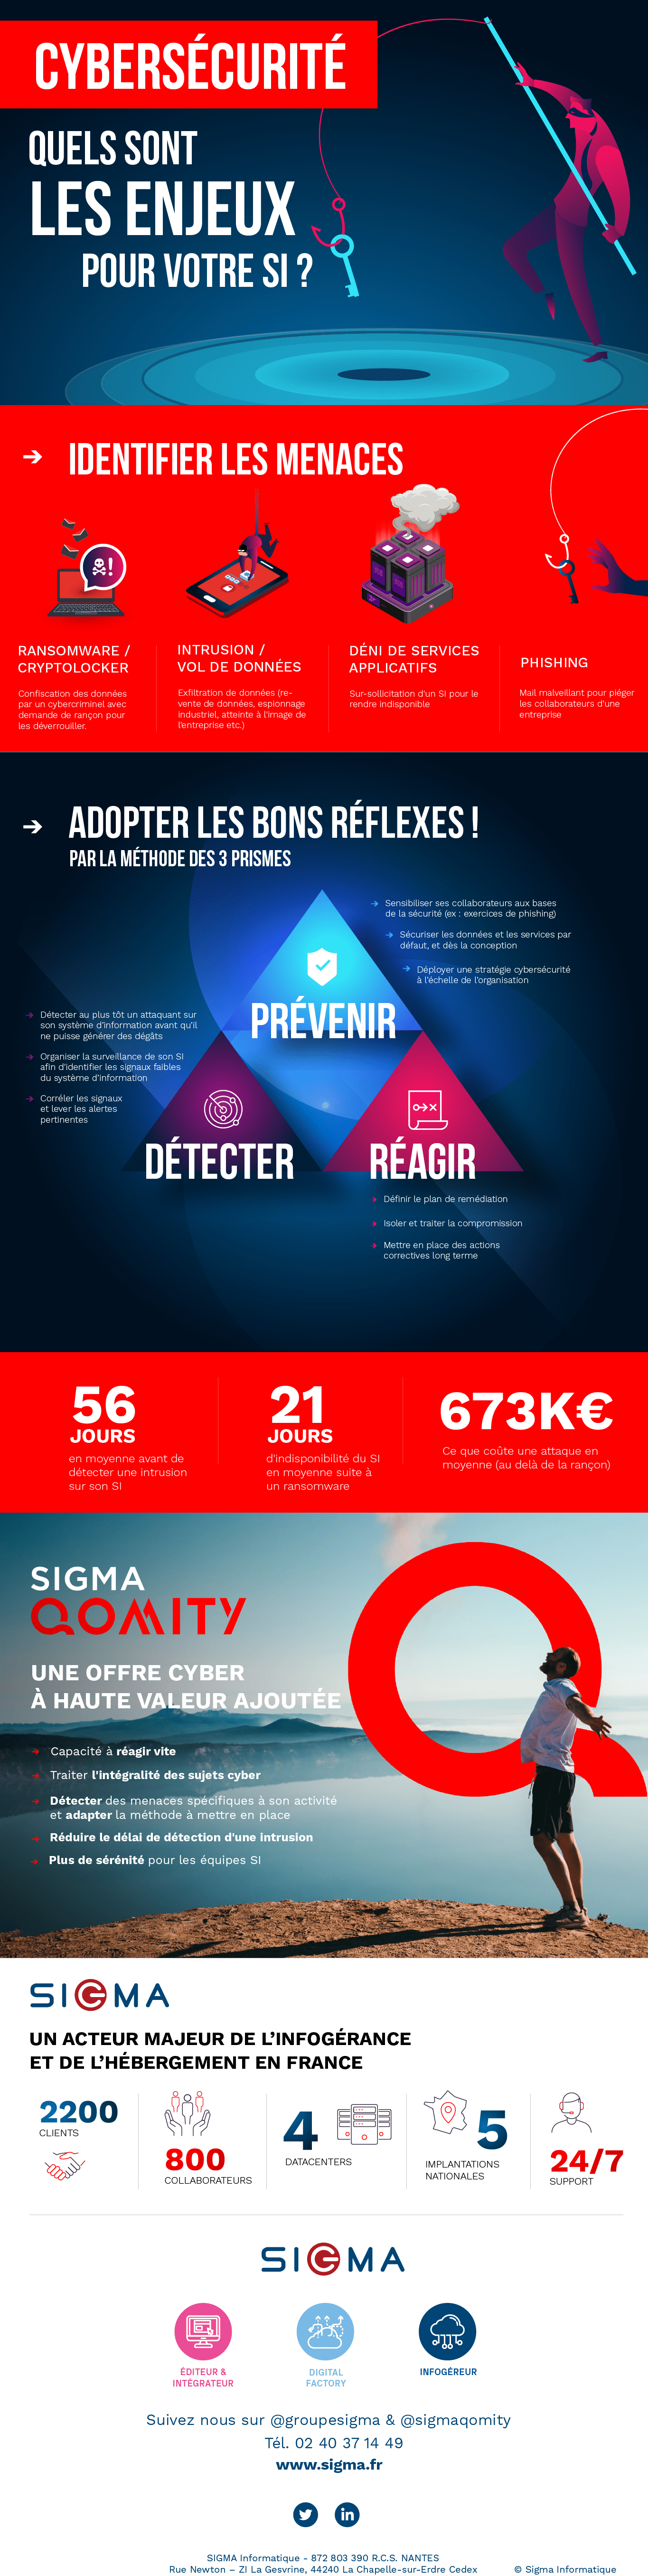 Infographie cybersécurité : les enjeux pour votre SI